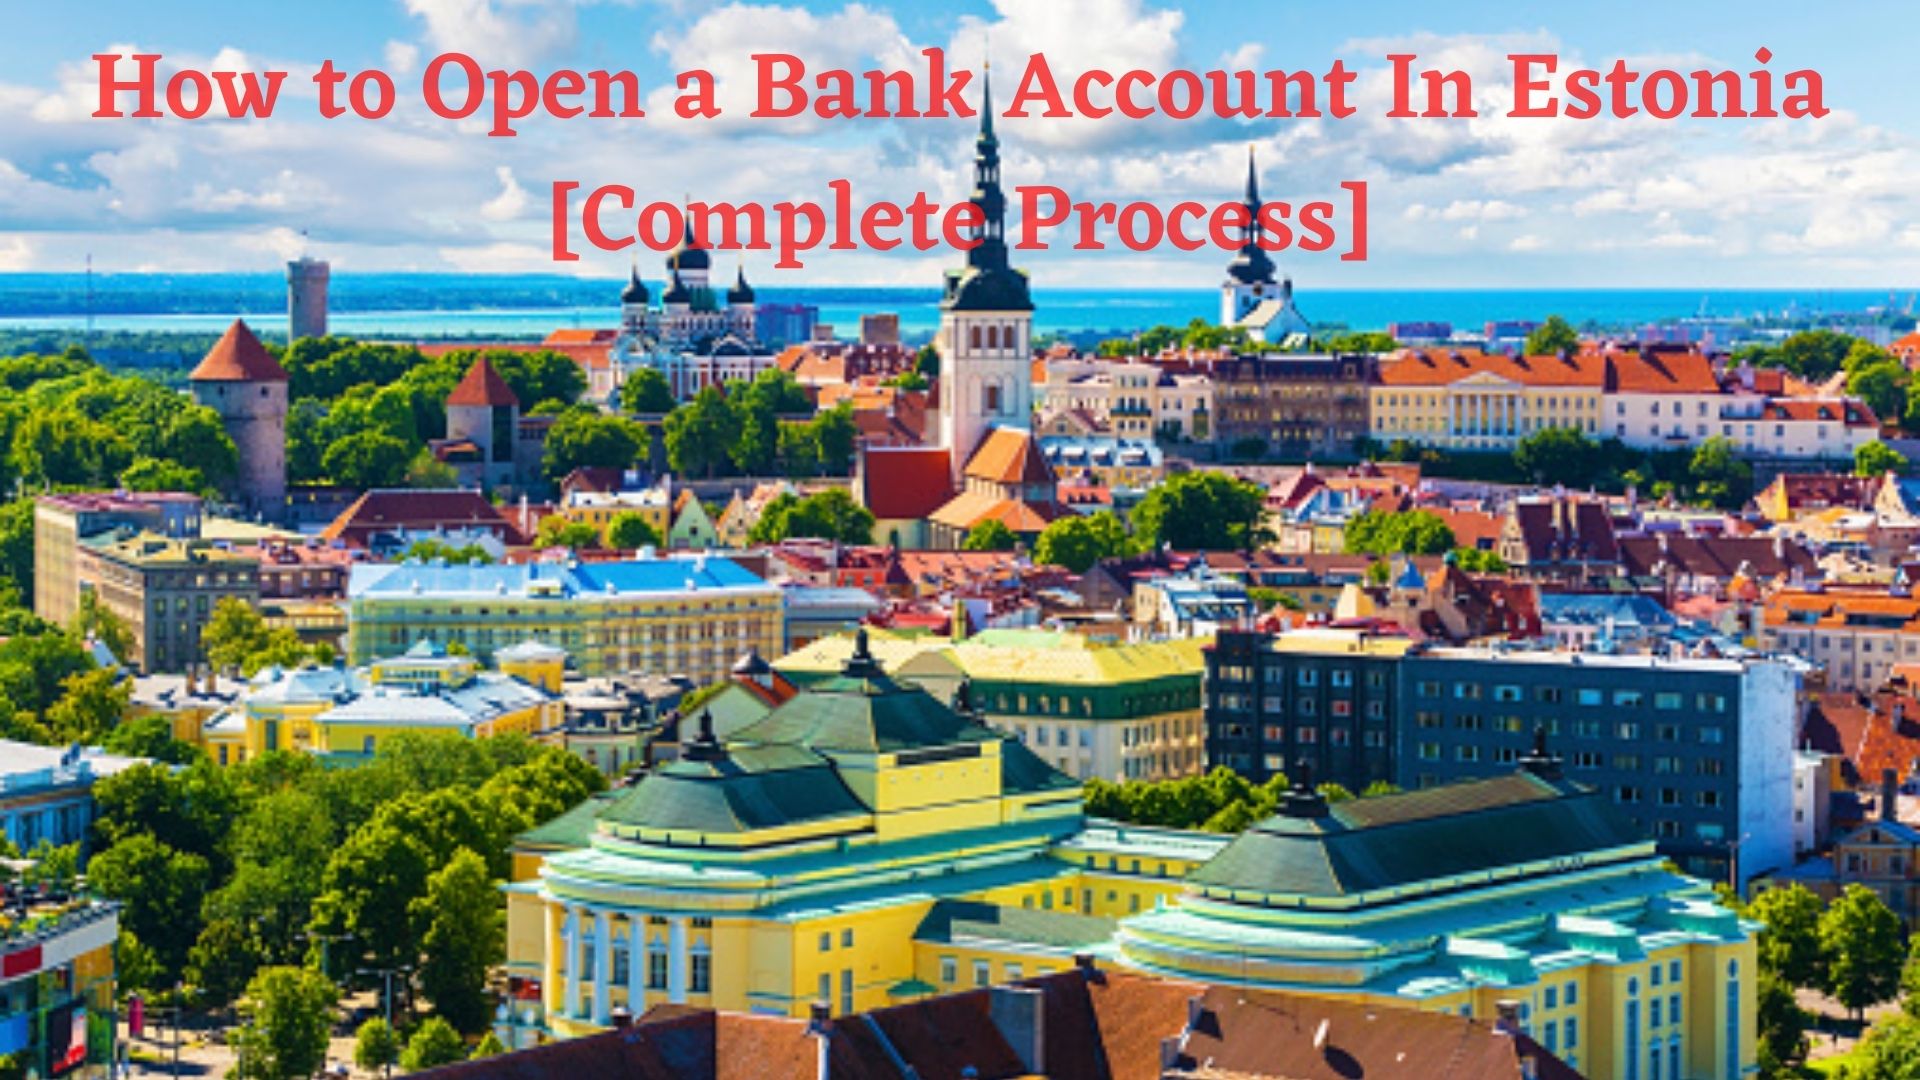 Open a Bank Account in Estonia